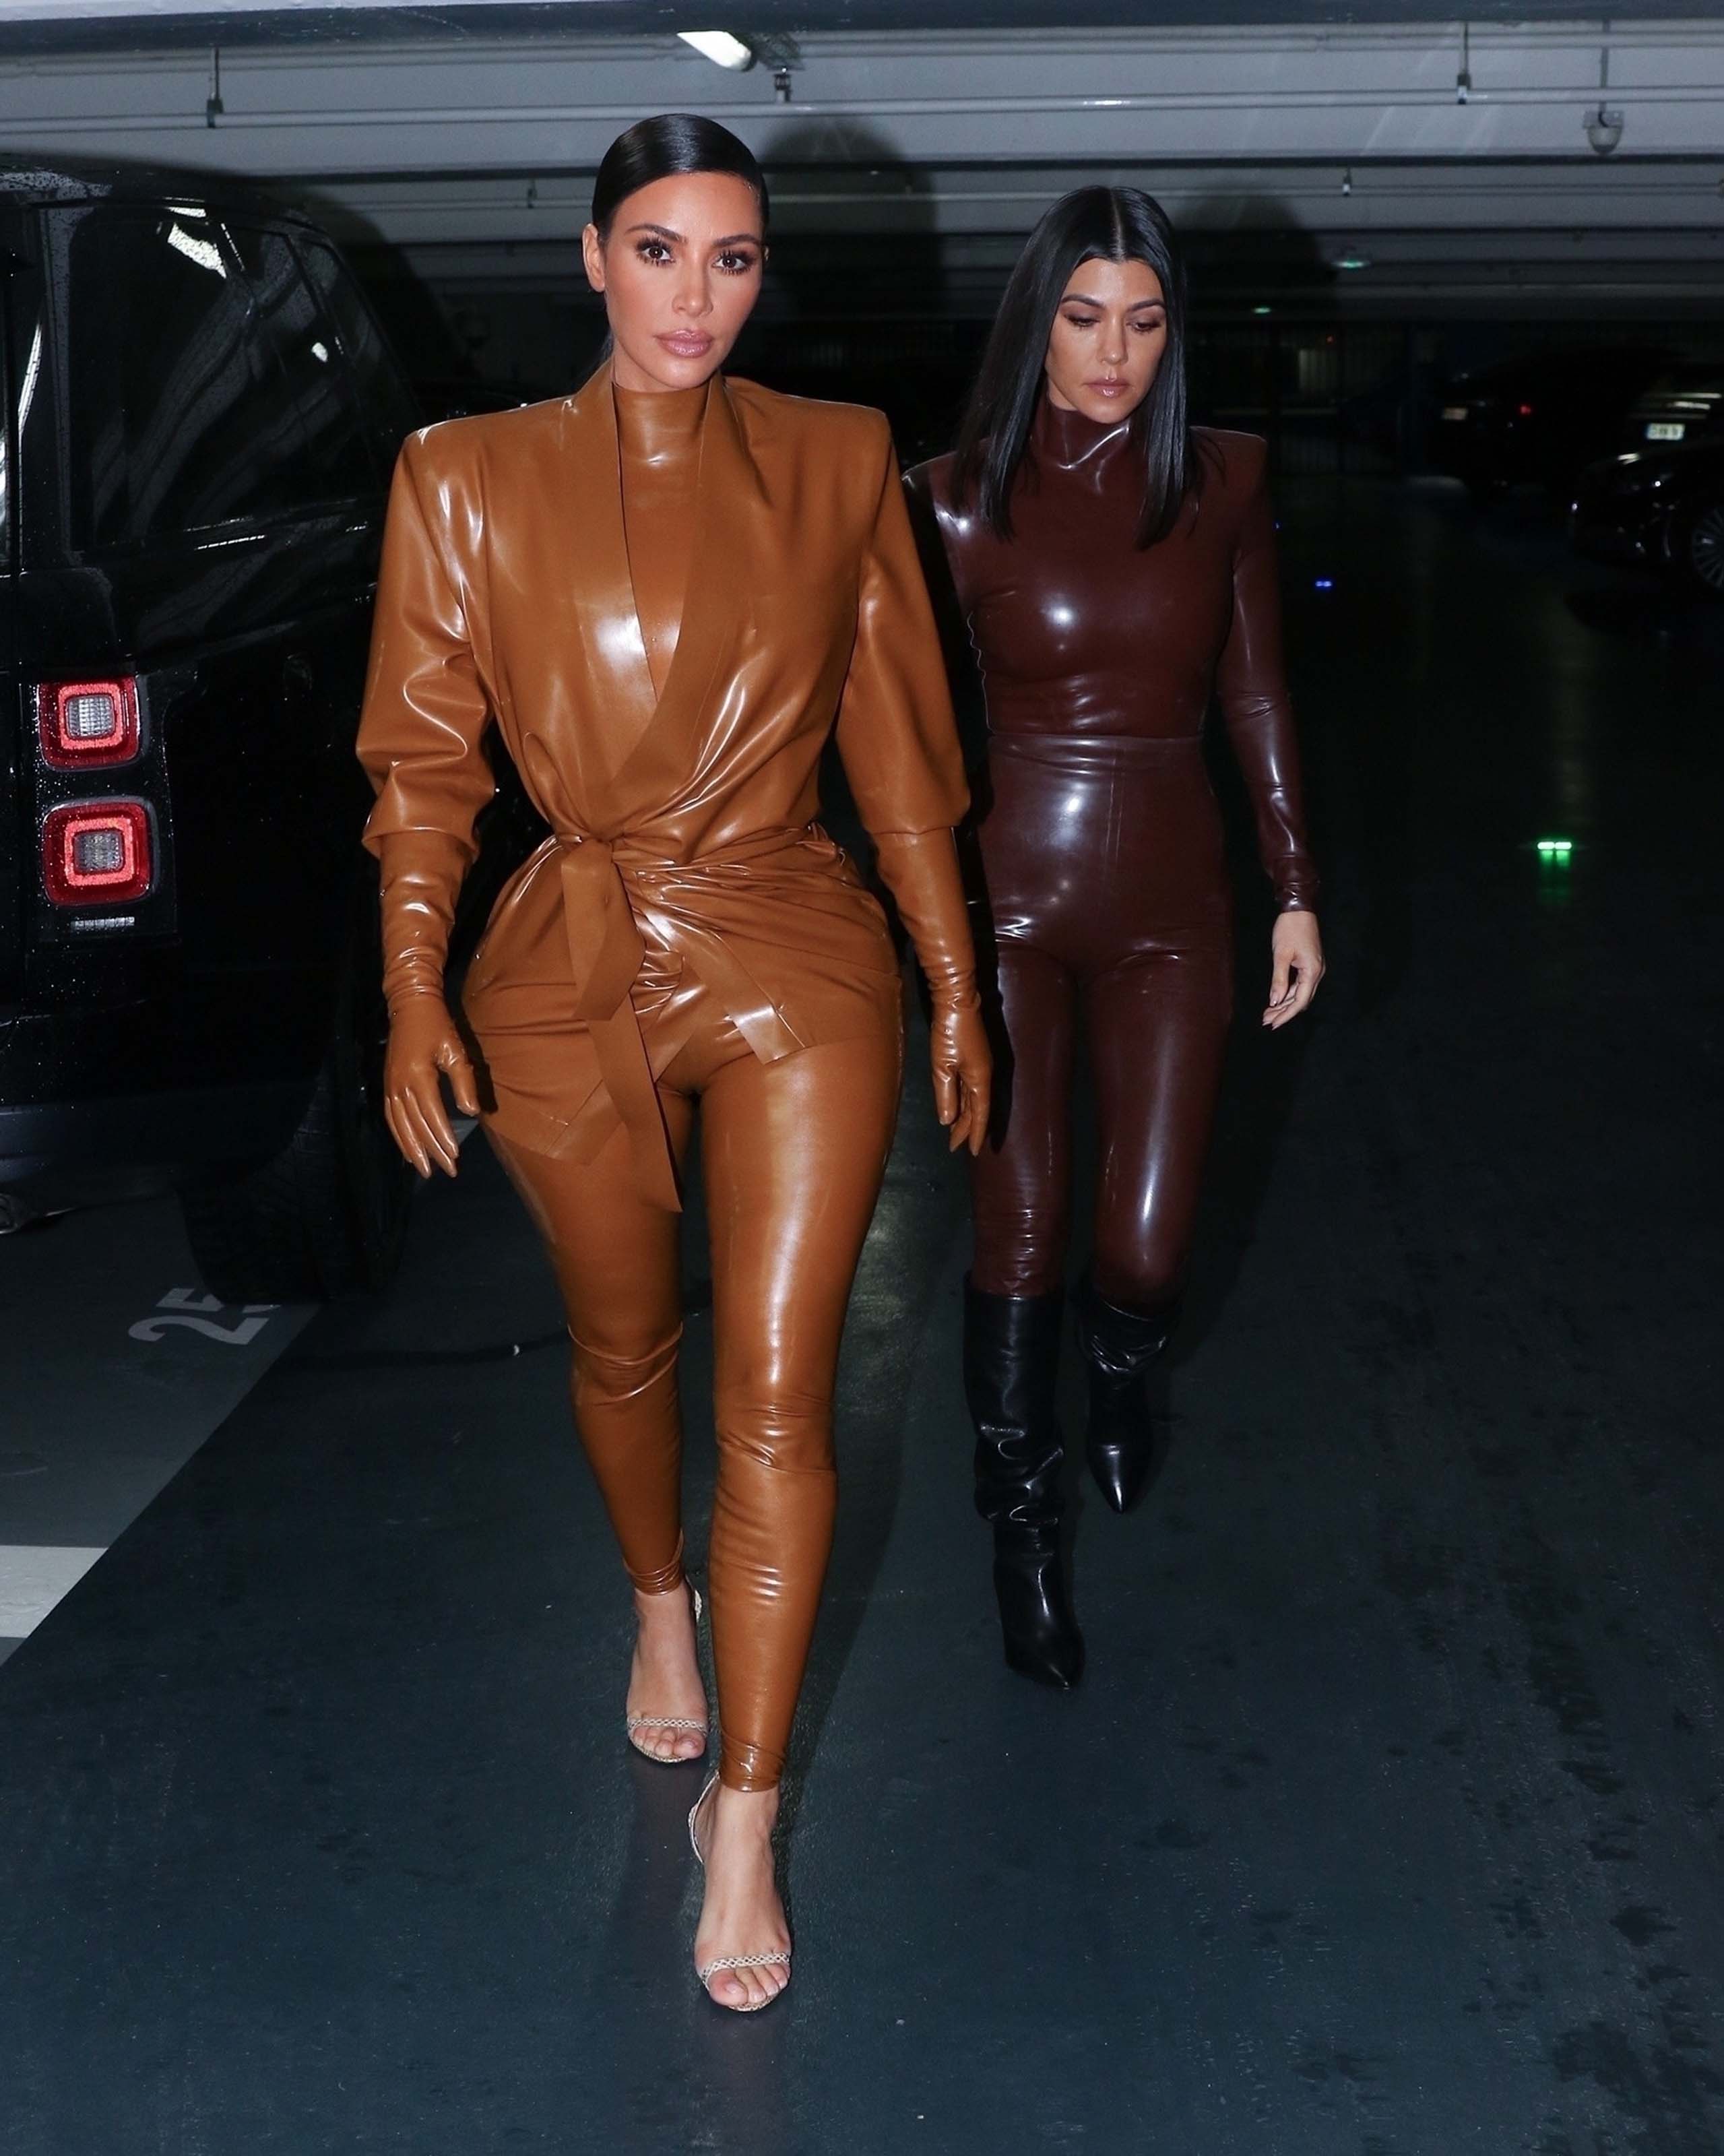 Kim Kardashian & Kourtney Kardashian seen out & about in Paris